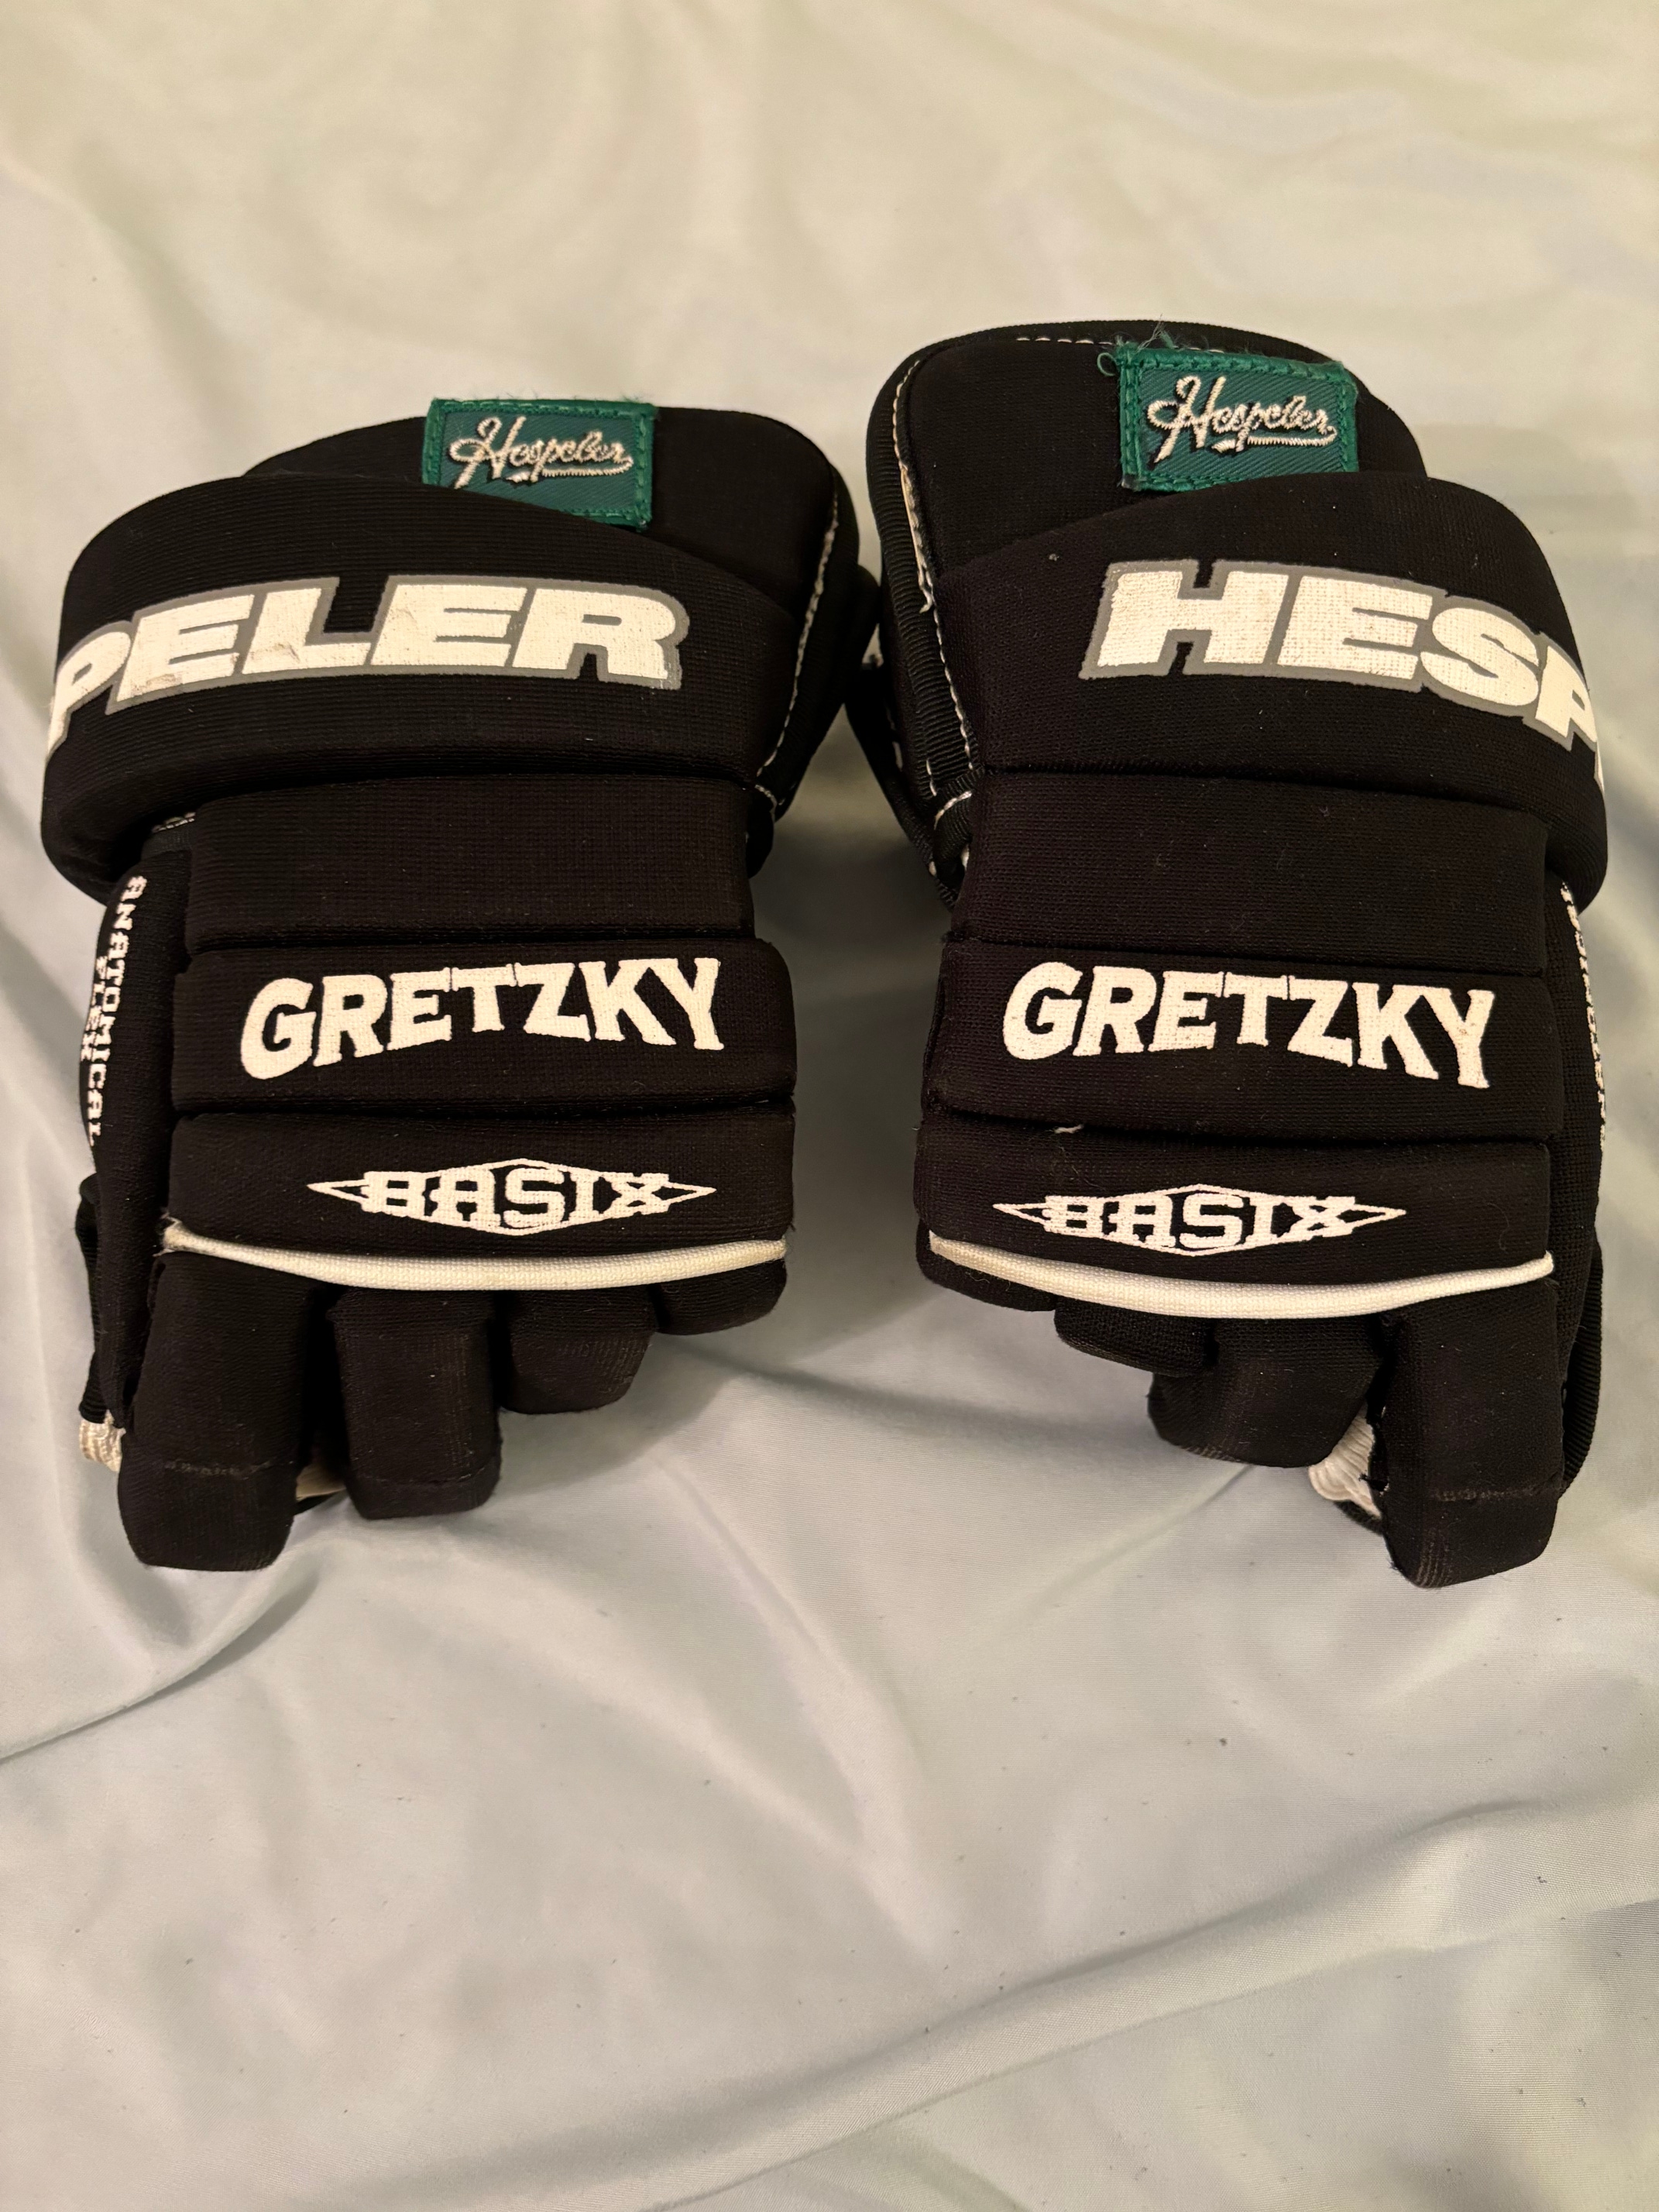 Hespeler Gretzky Basix 10” Ice Hockey Gloves